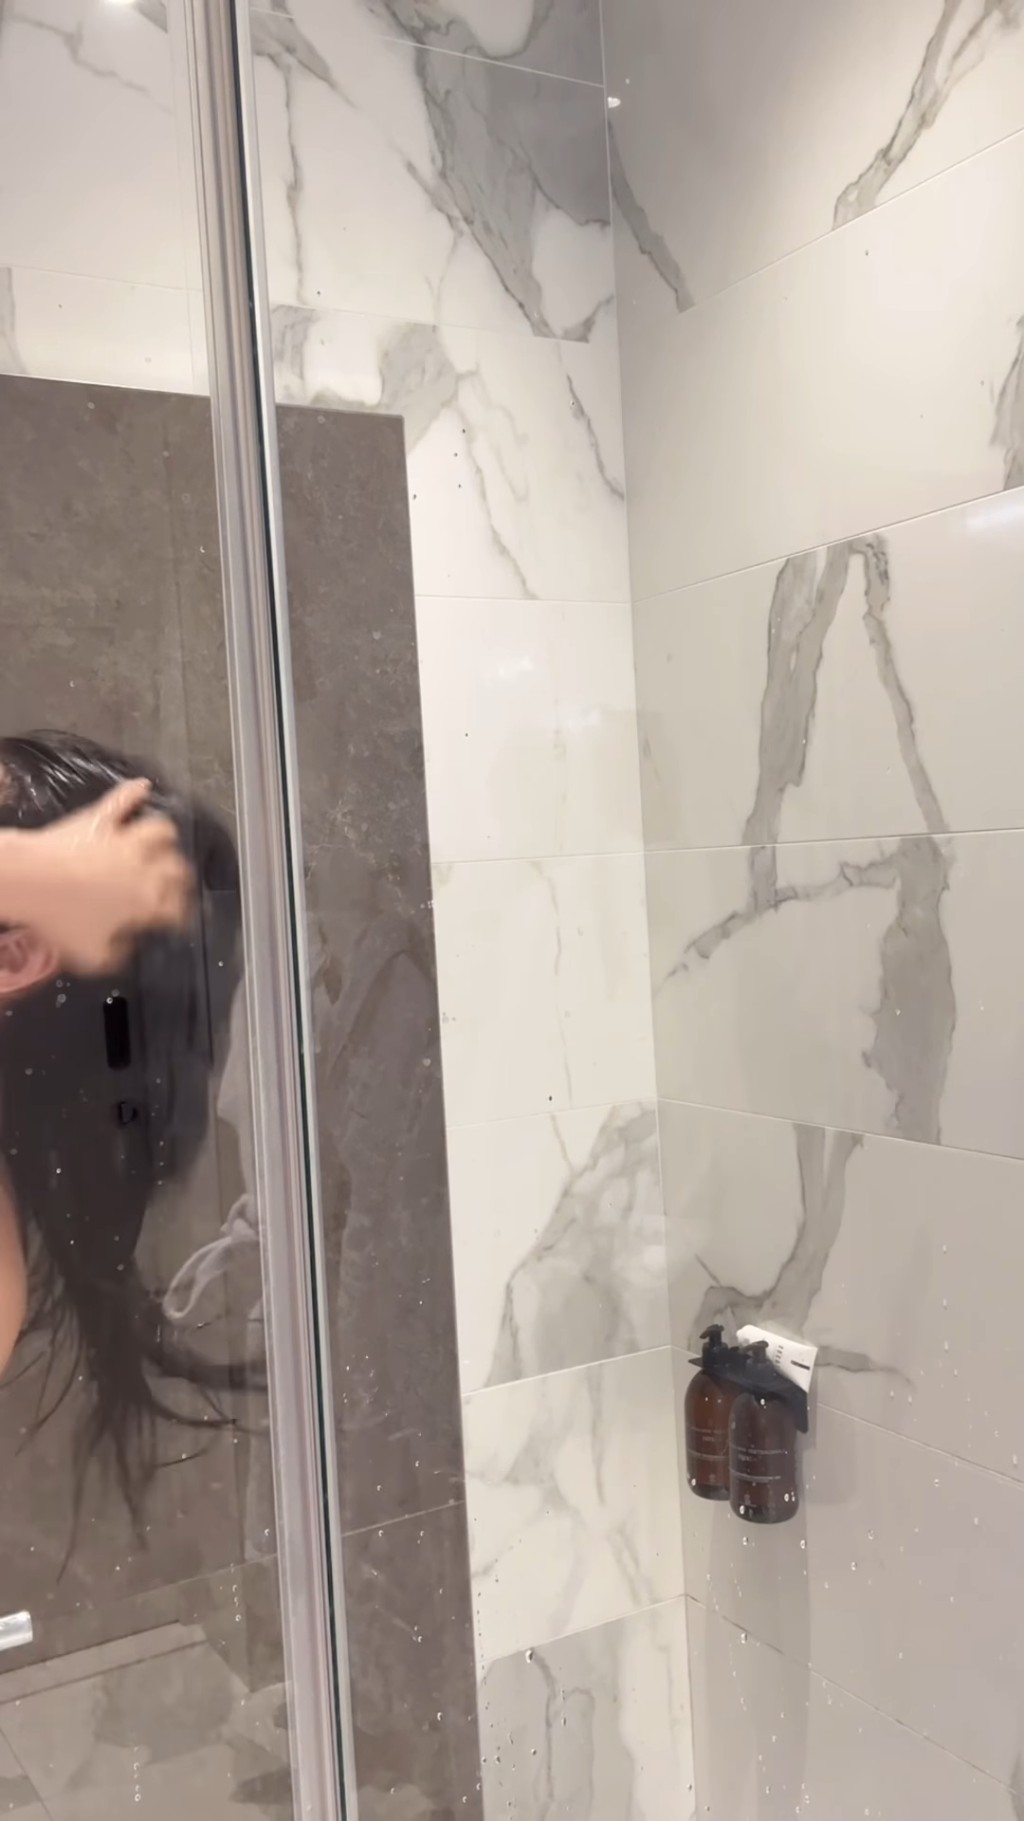 影片初段見到林寶玉在洗頭，受鏡頭所限，未能看到甚麼。